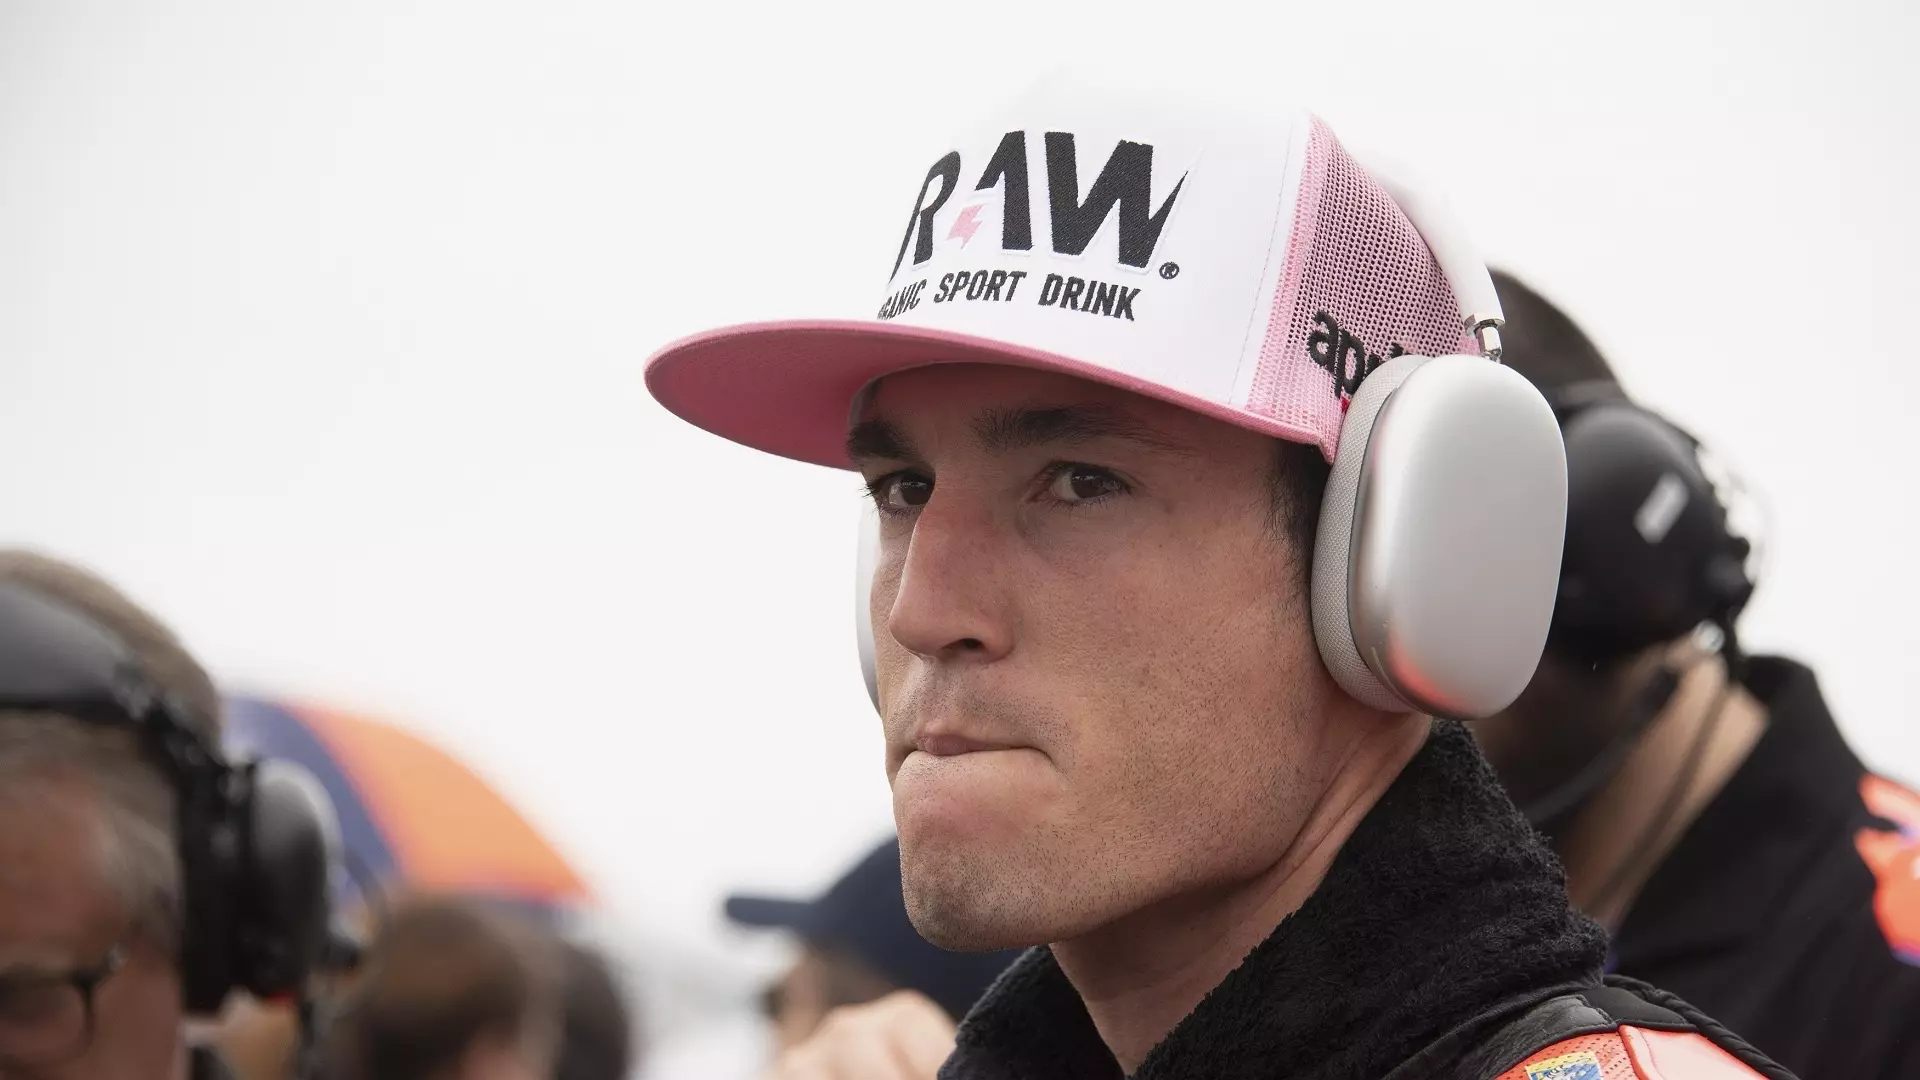 Aleix Espargaró attacca la Ducati: “Mancano di rispetto”